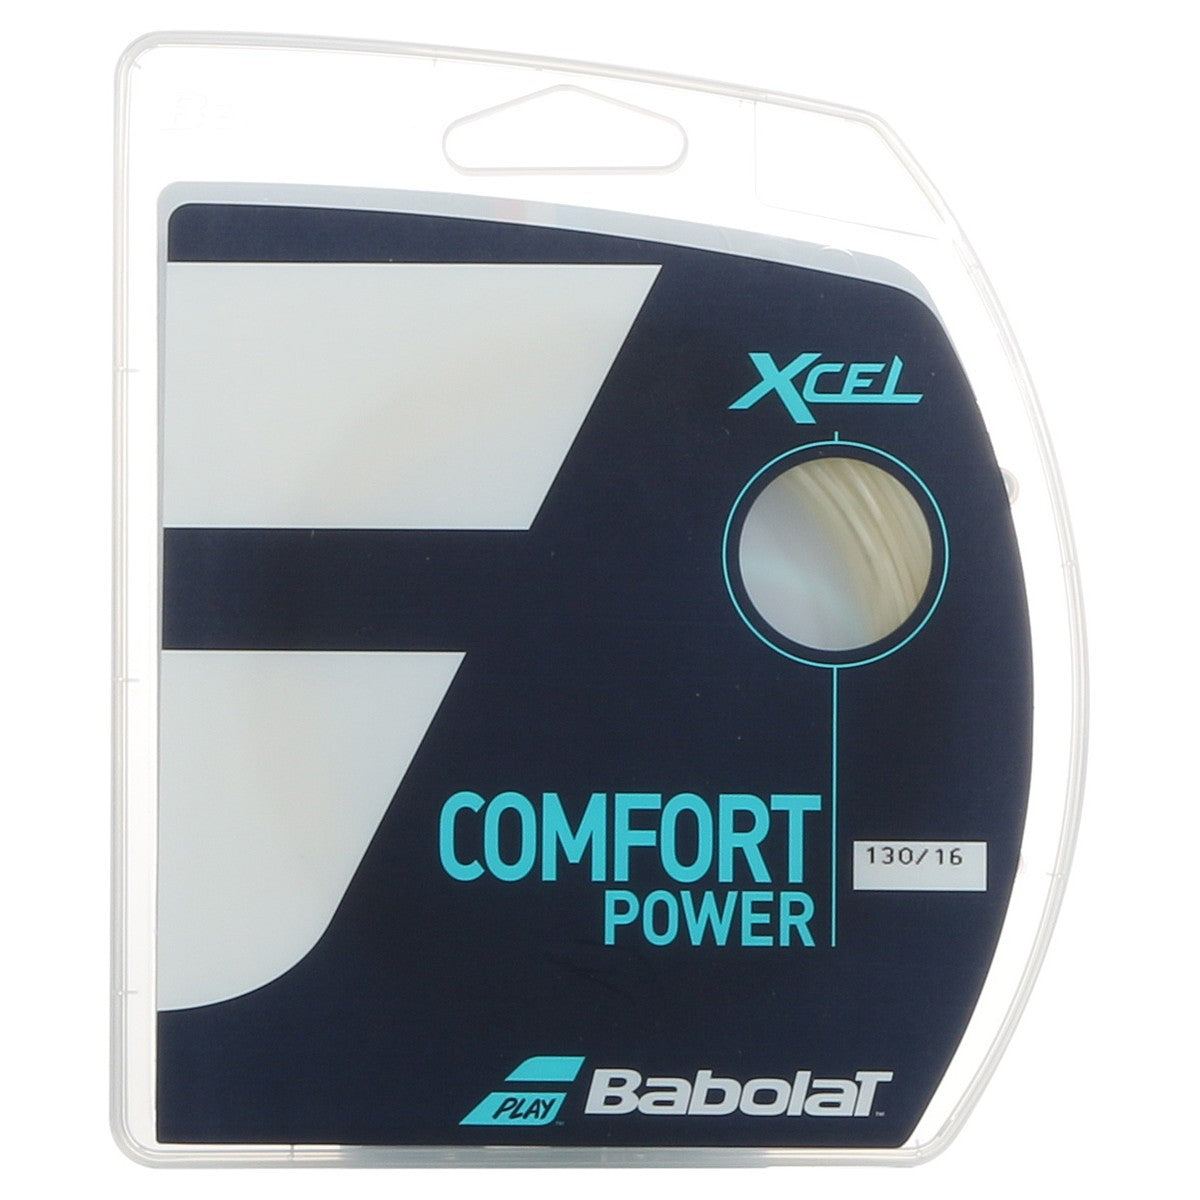 Babolat XCel Premium 1.30 (18€)